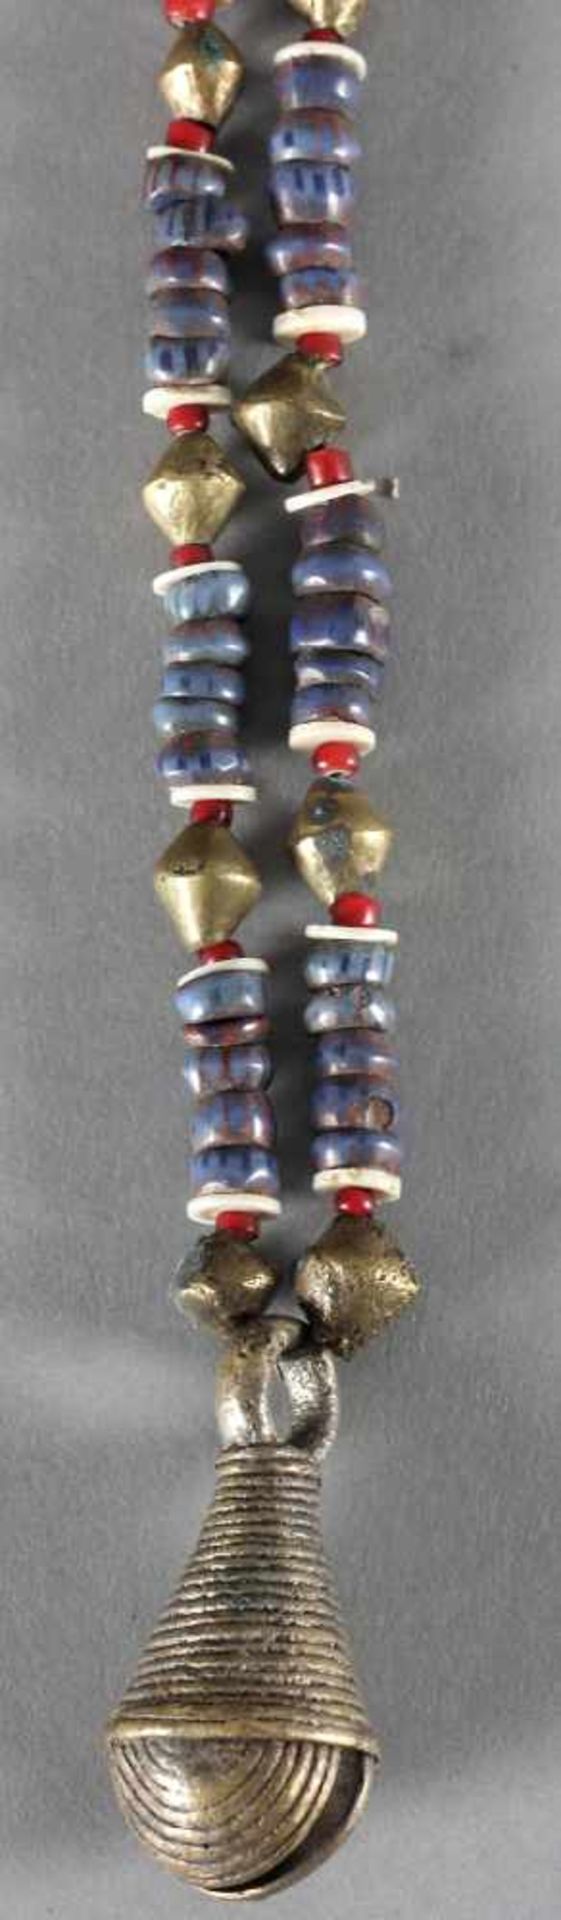 Halskette, Messing und Glas, Afrika, wohl 20. Jh.untergliedert in 14 Abschnitte mit jeweils 5 Perlen